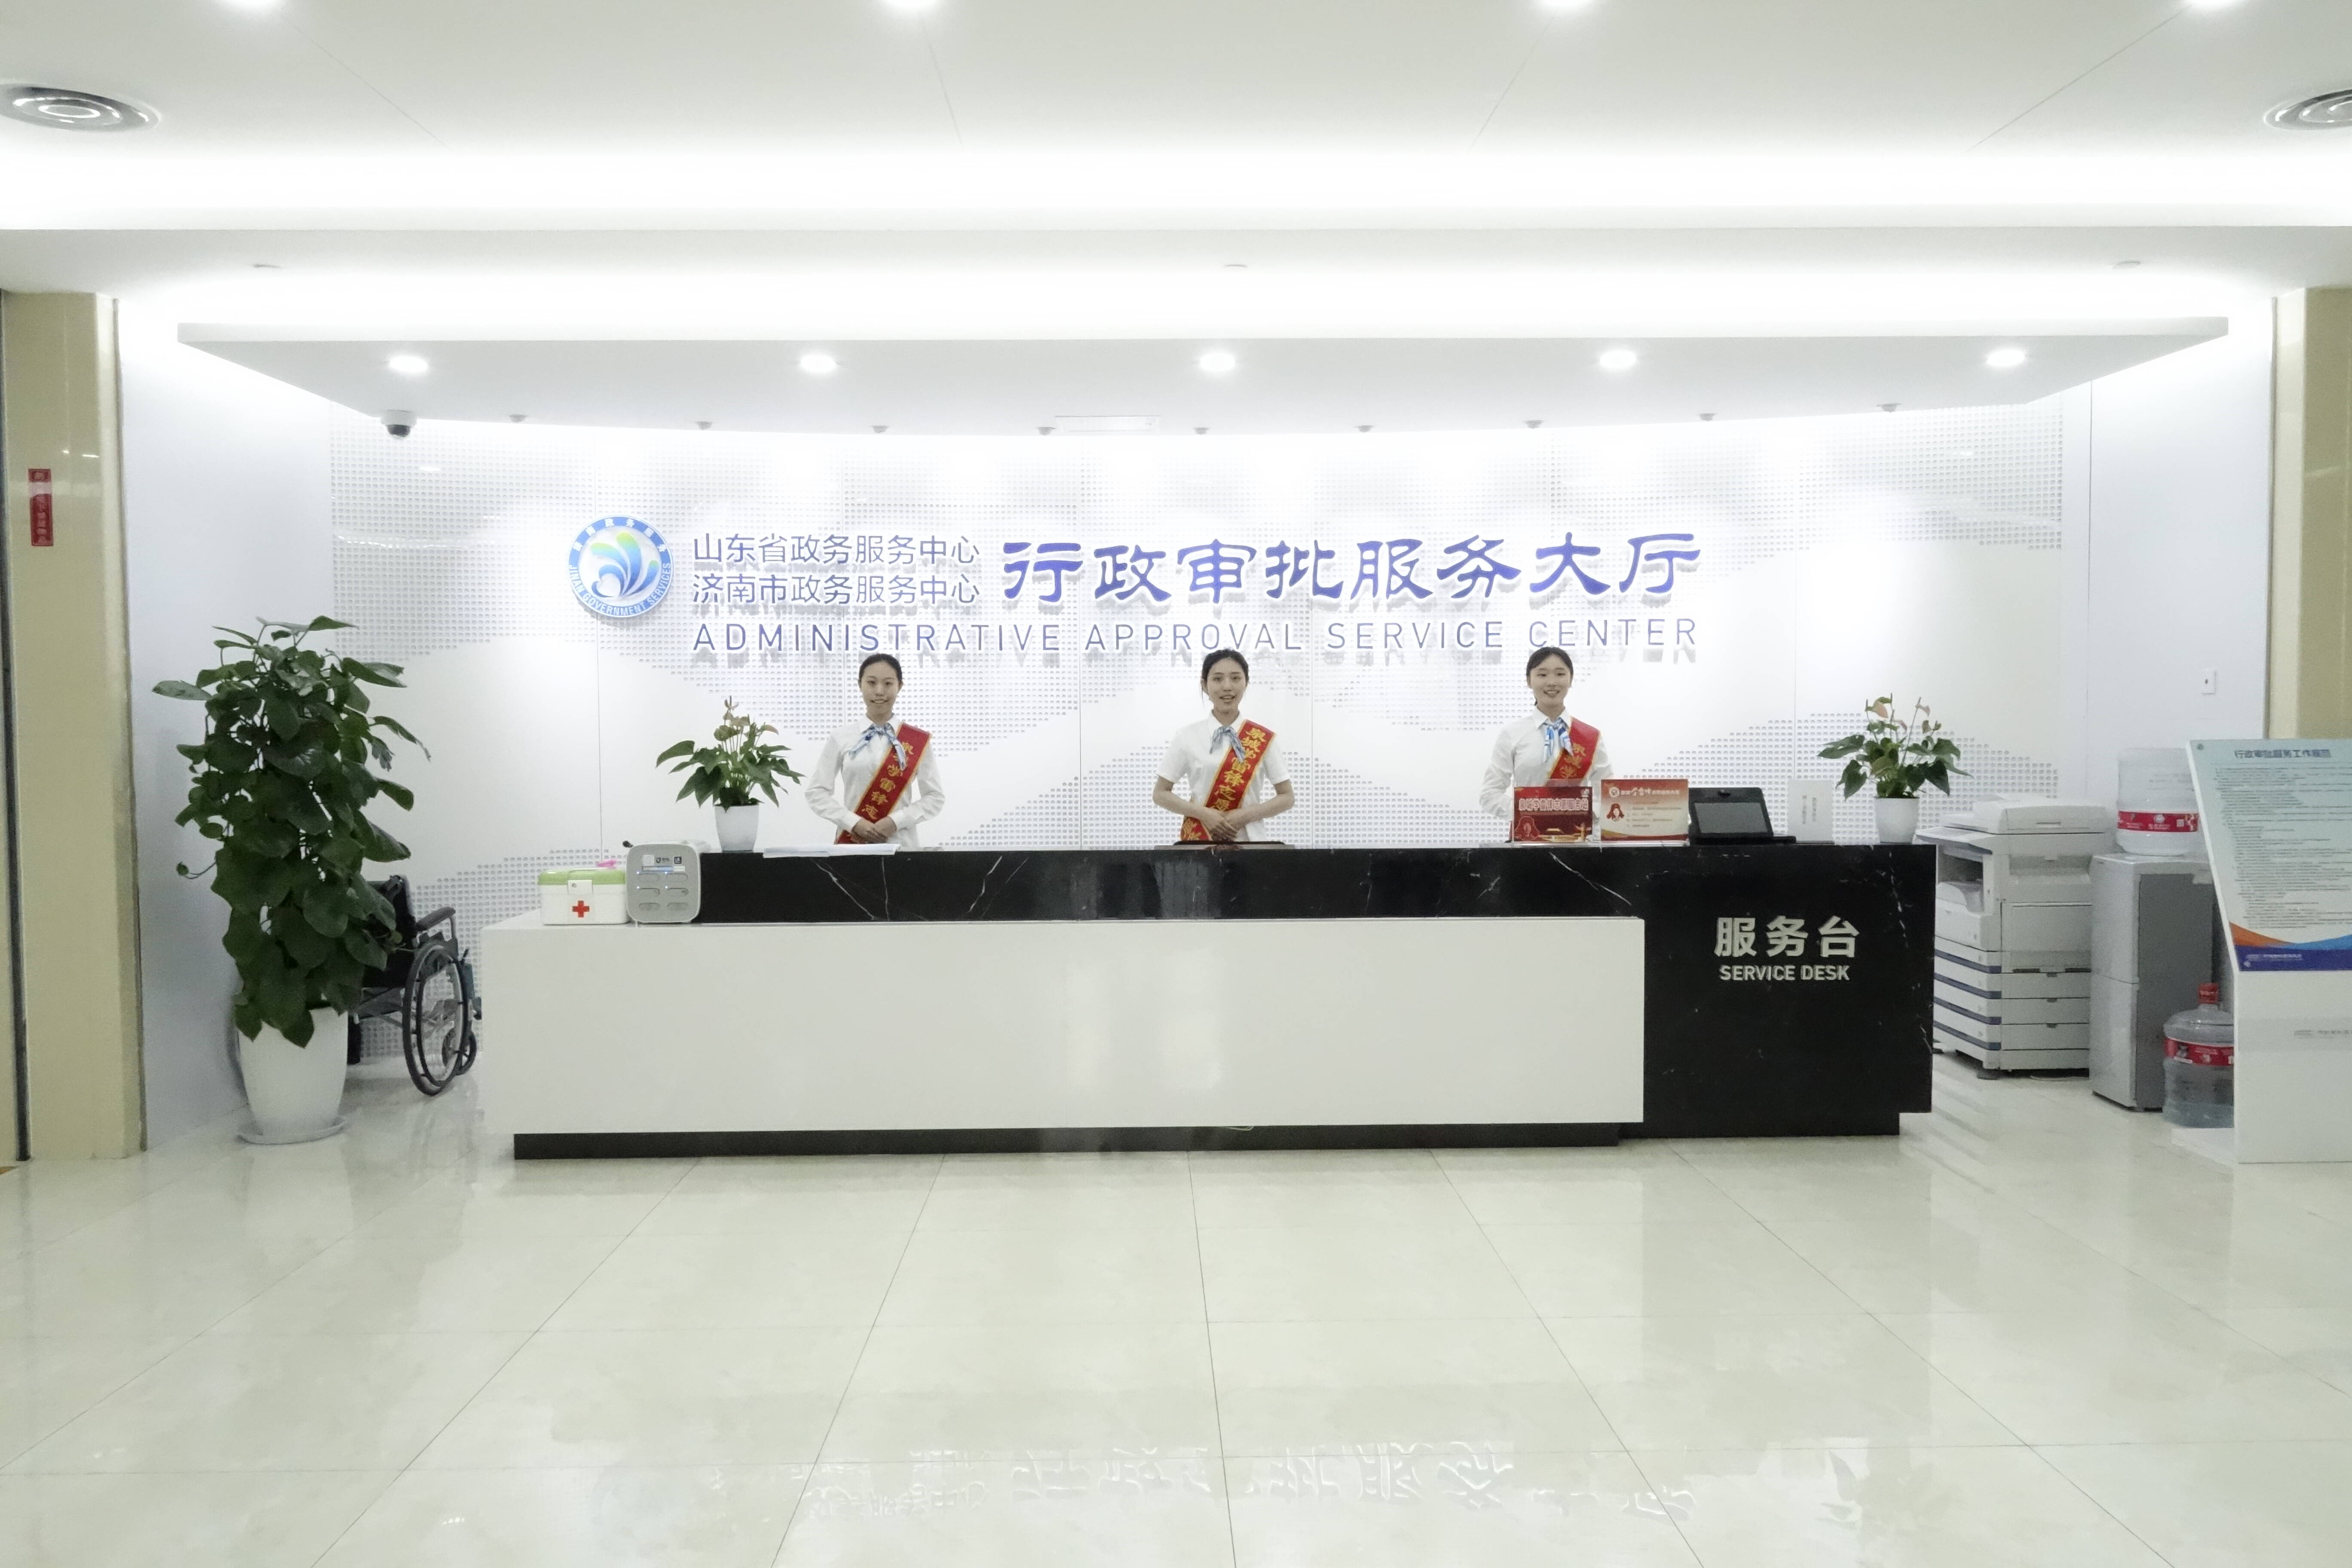 济南审批服务局成为全国首个政务服务标准化国家级试点单位